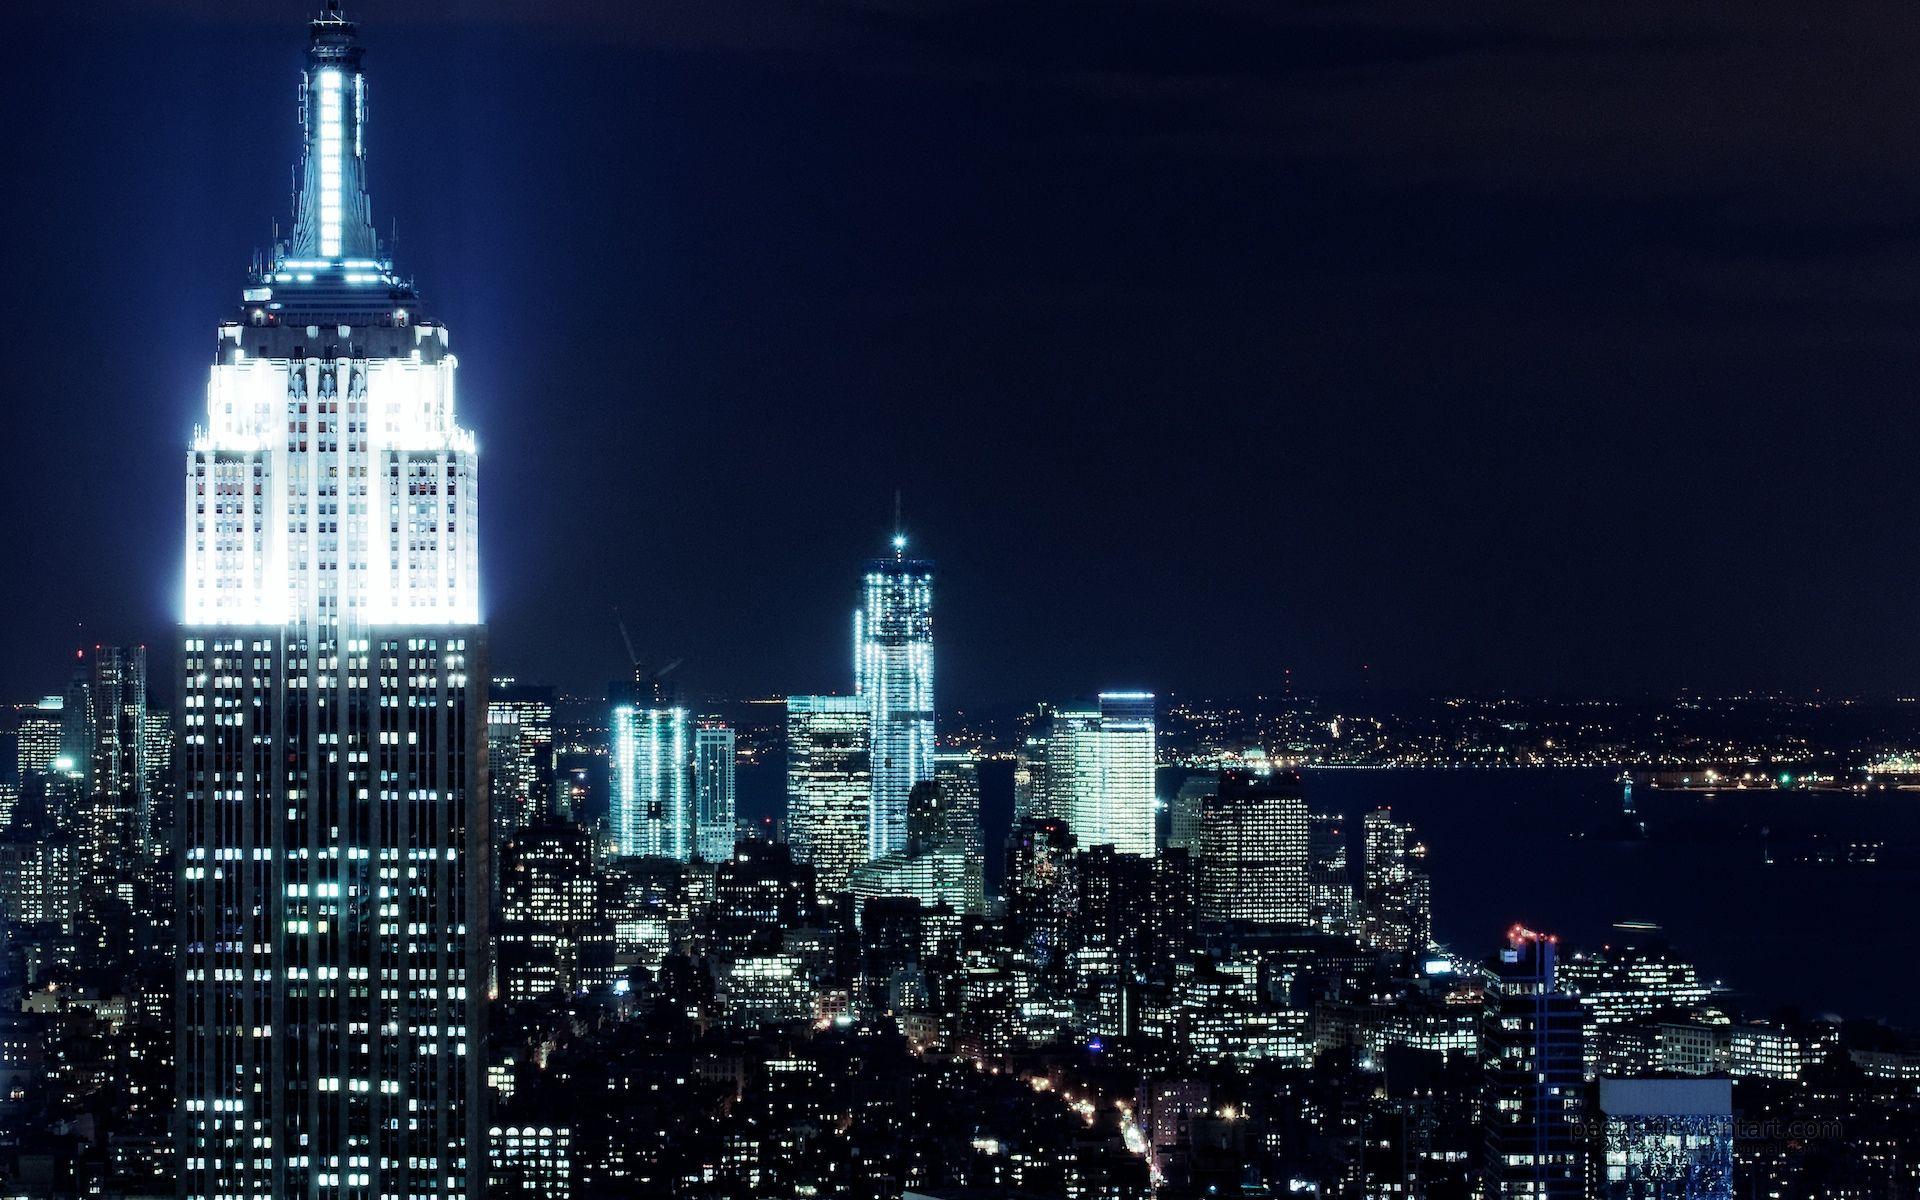 New York City At Night Free Wallpaper. I HD Image